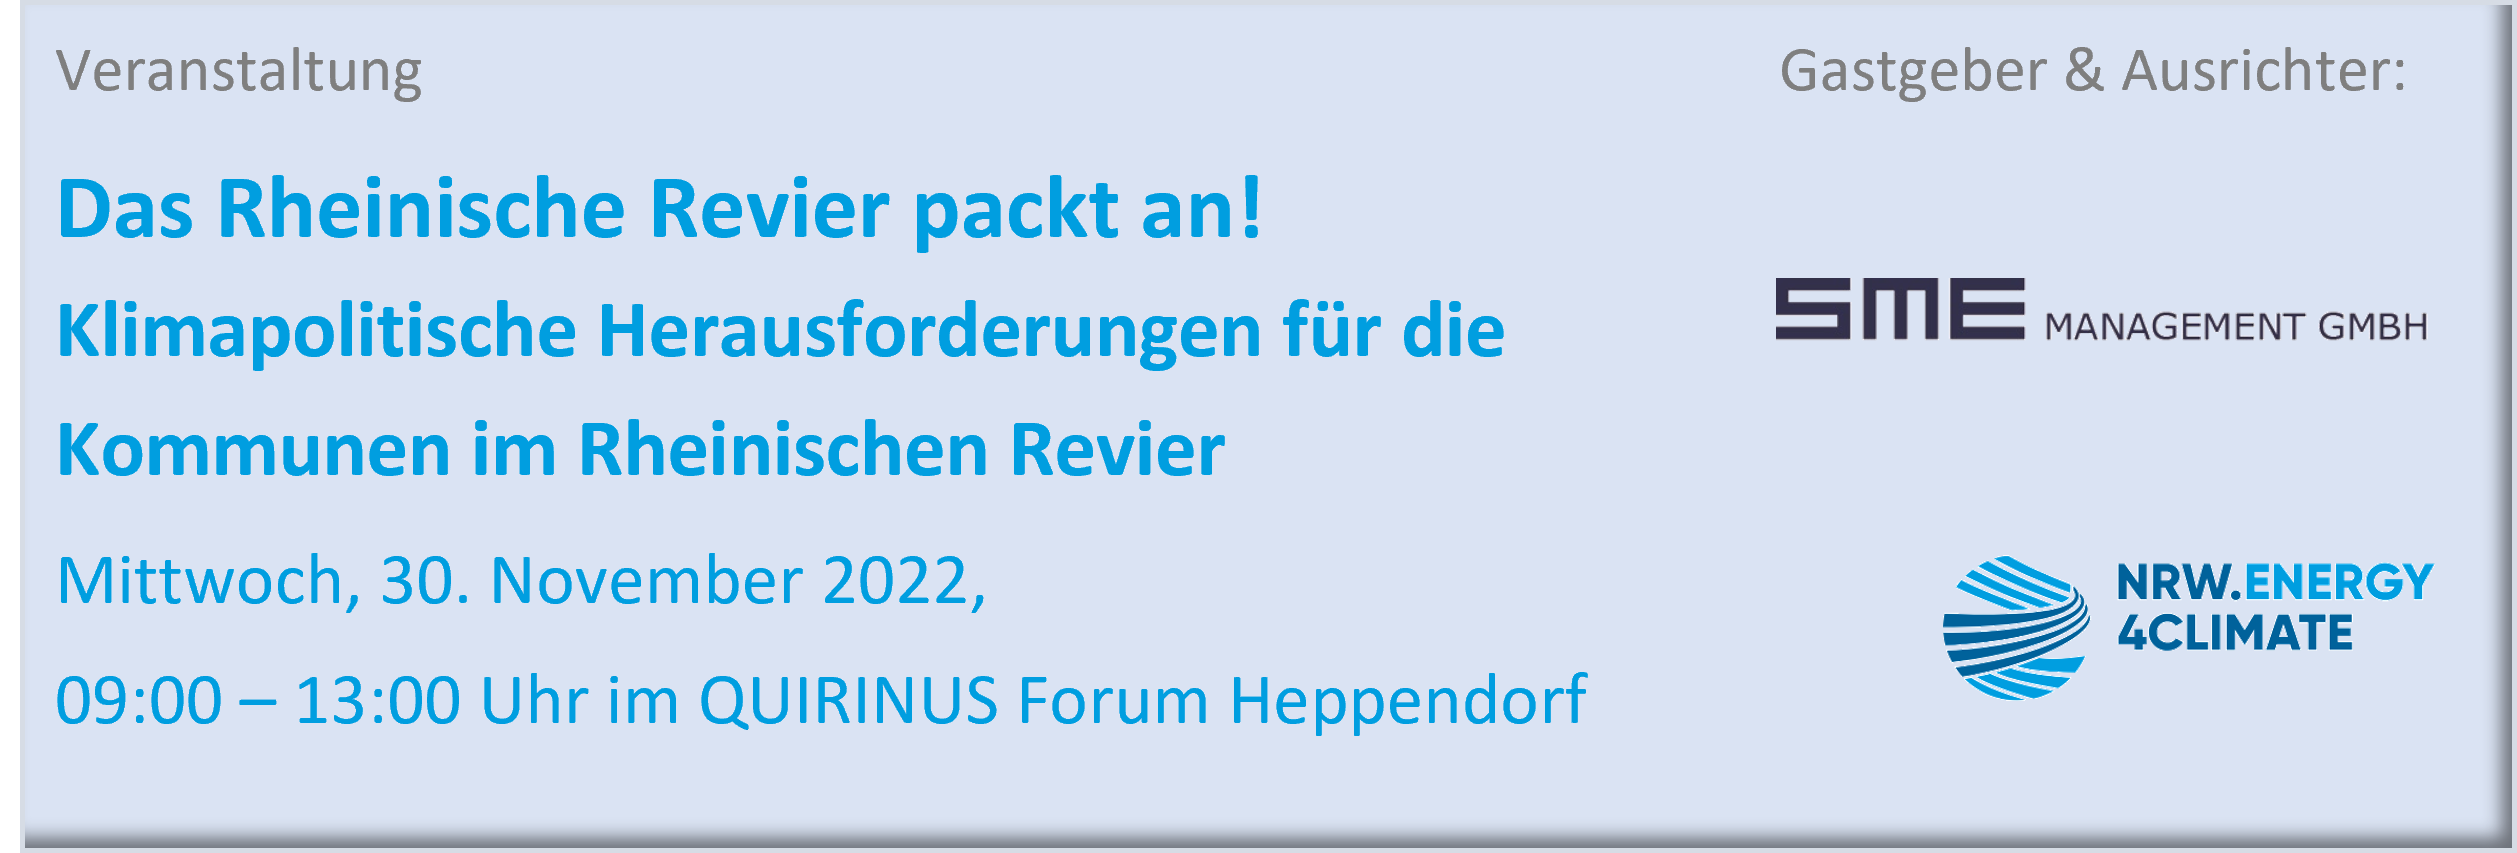 Das Rheinische Revier packt an! 30.11.2022